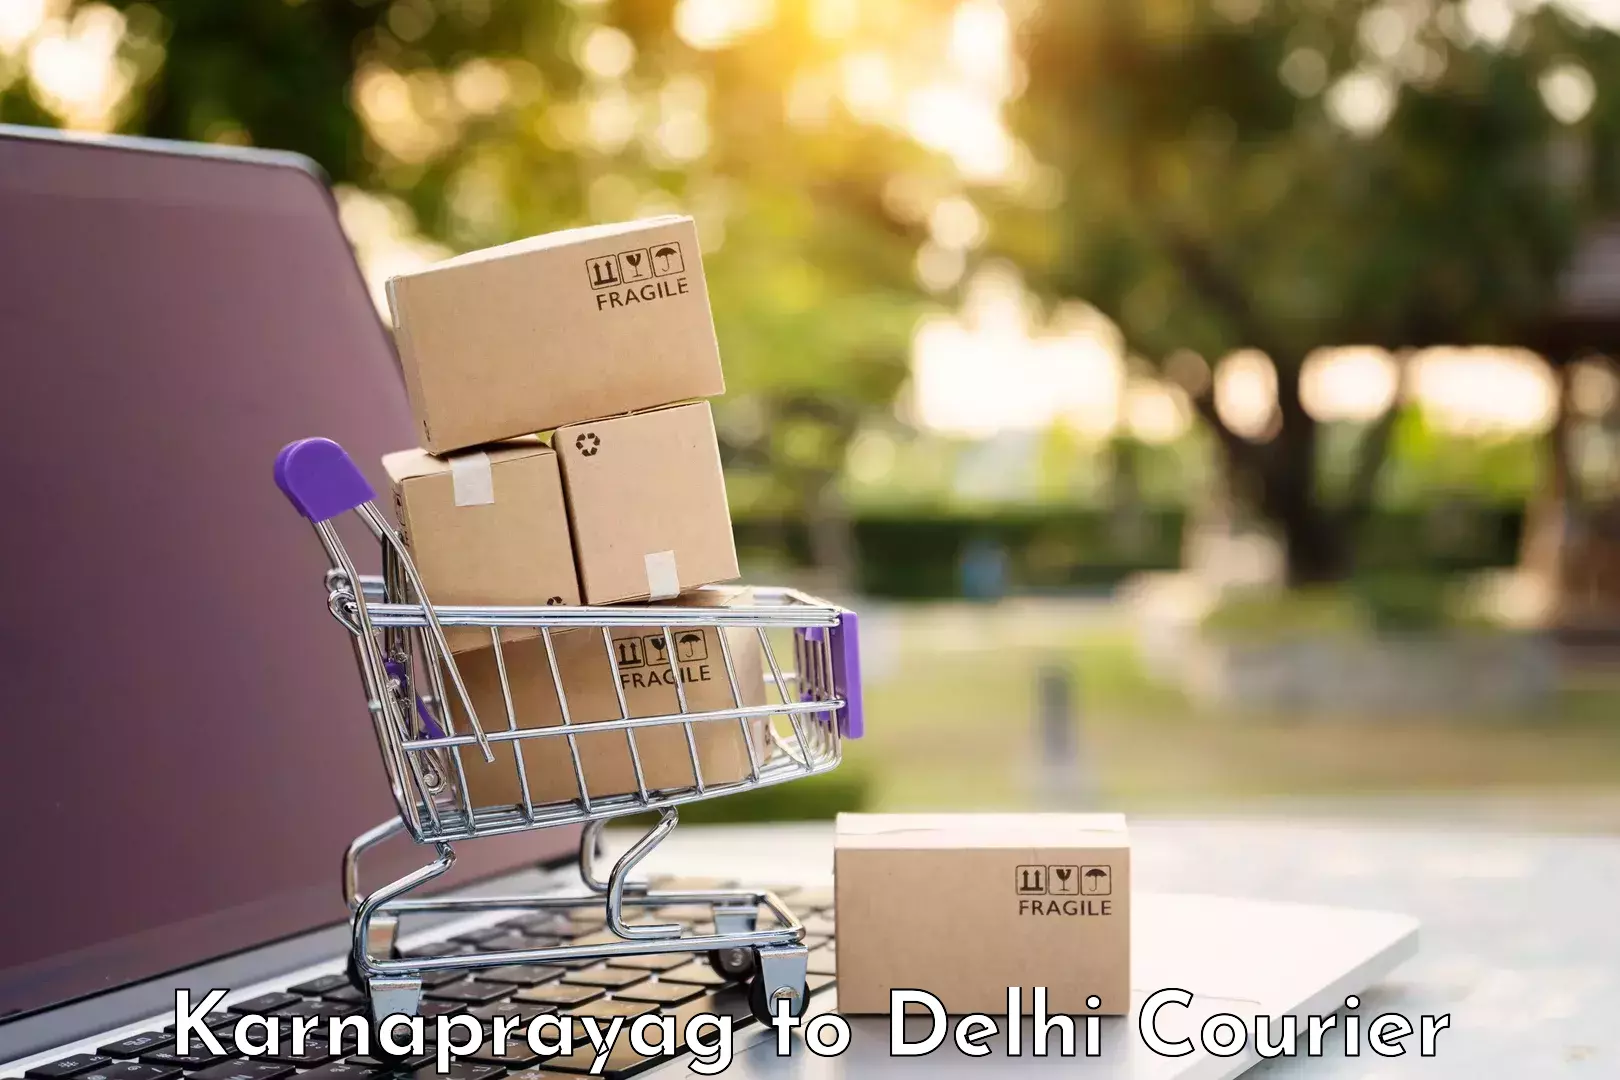 Nationwide luggage courier Karnaprayag to Jamia Millia Islamia New Delhi